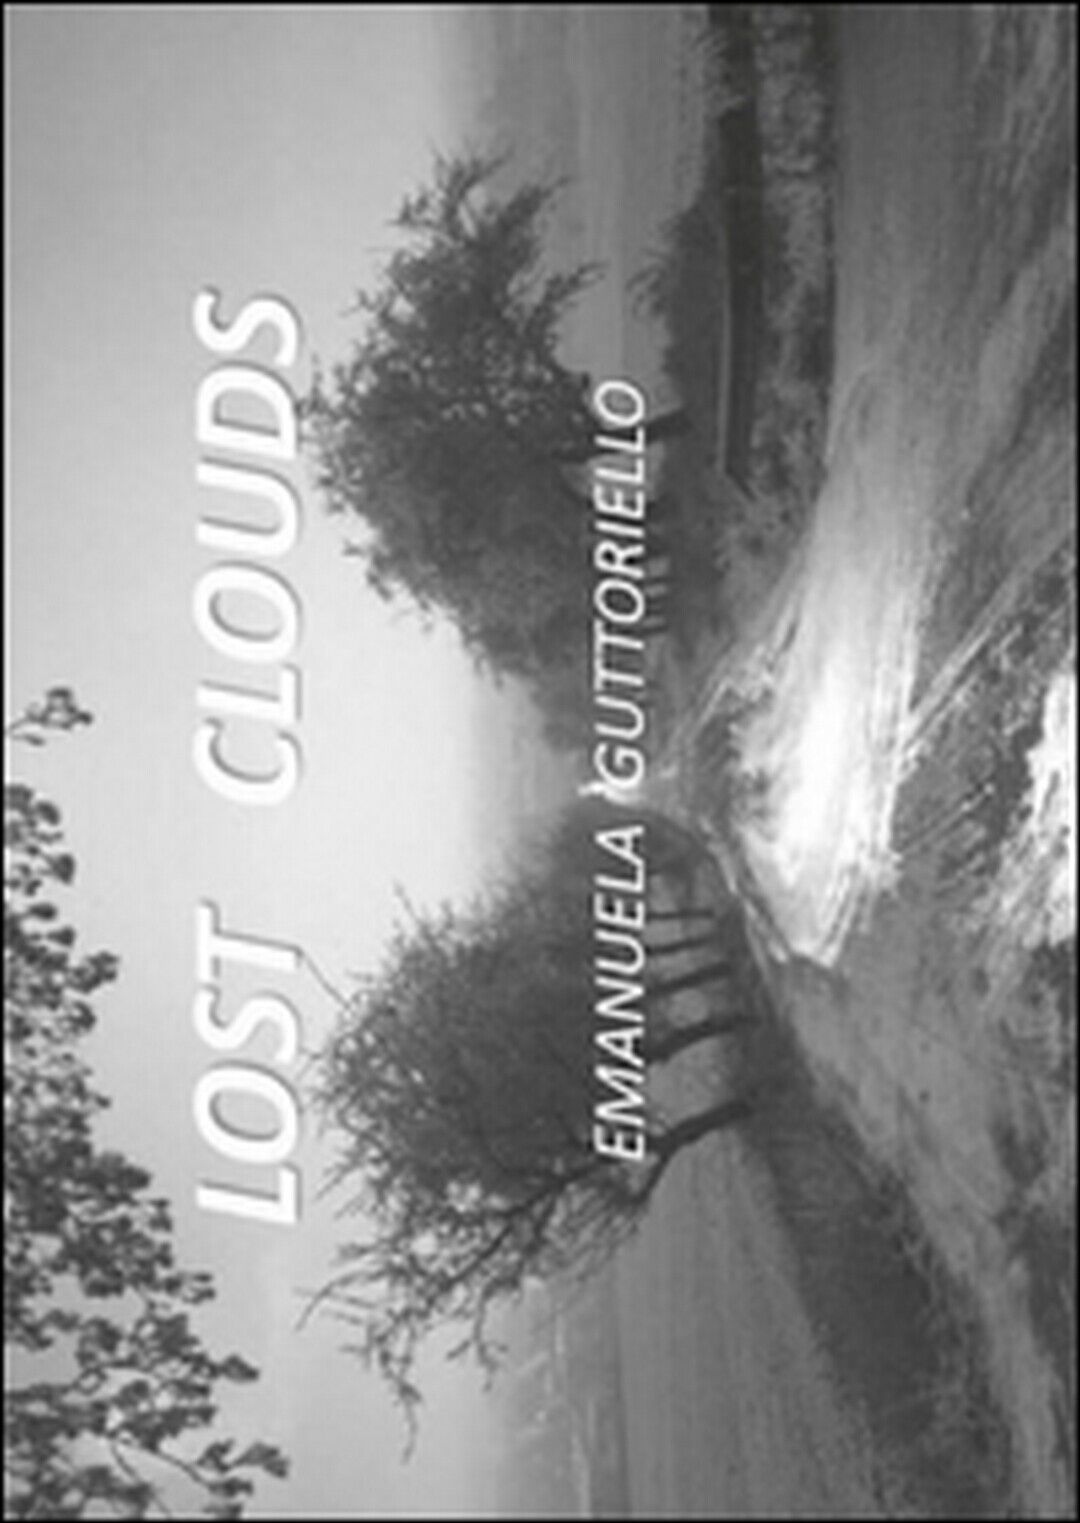 Lost clouds  di Emanuela Guttoriello,  2015,  Youcanprint libro usato